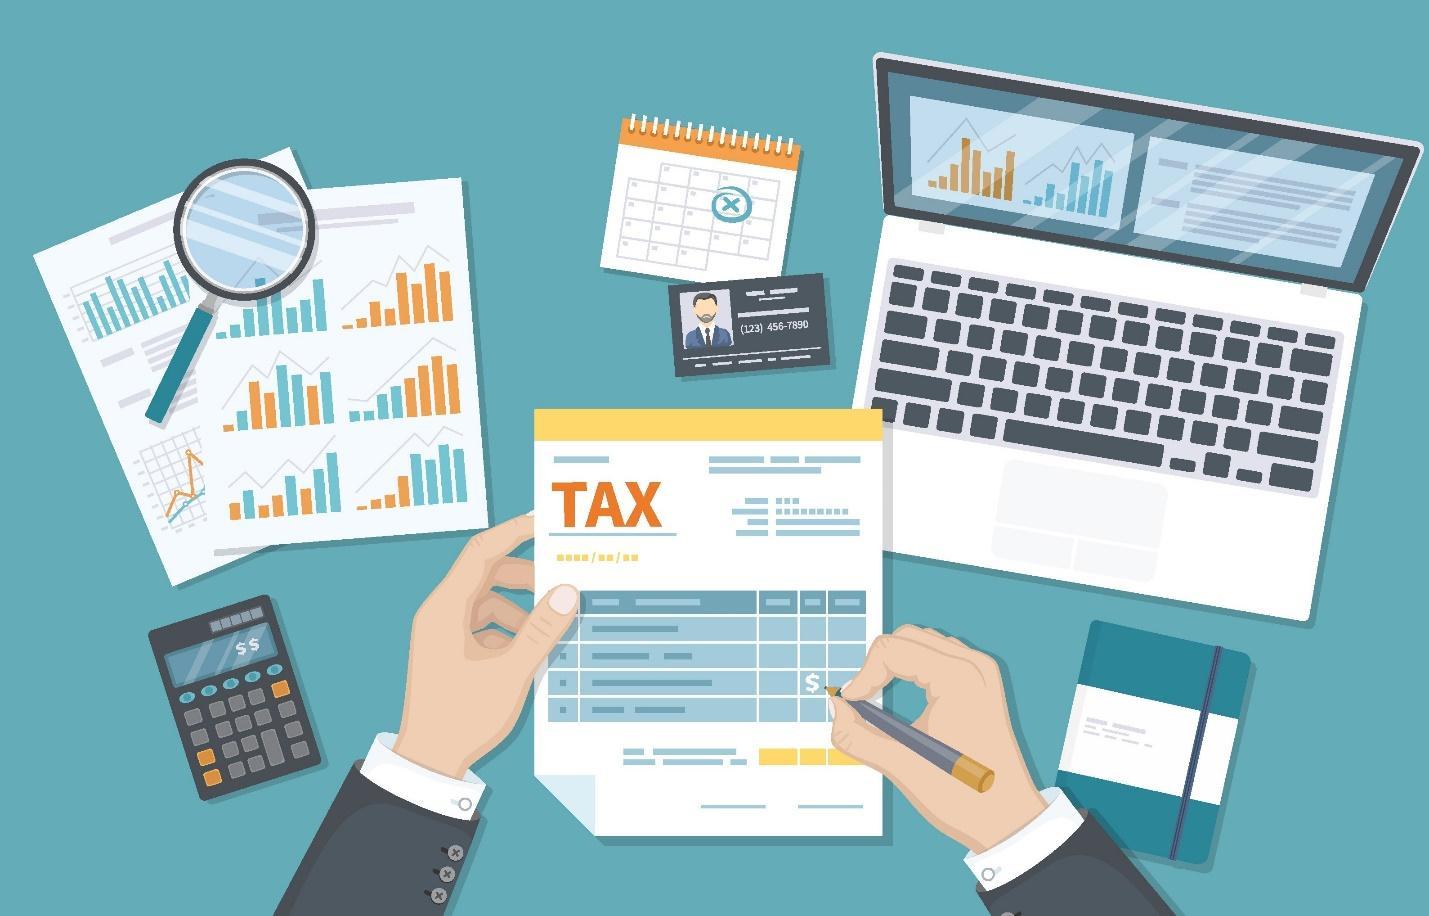 Doanh nghiệp sử dụng mã số thuế để đăng ký, thực hiện các nghĩa vụ thuế